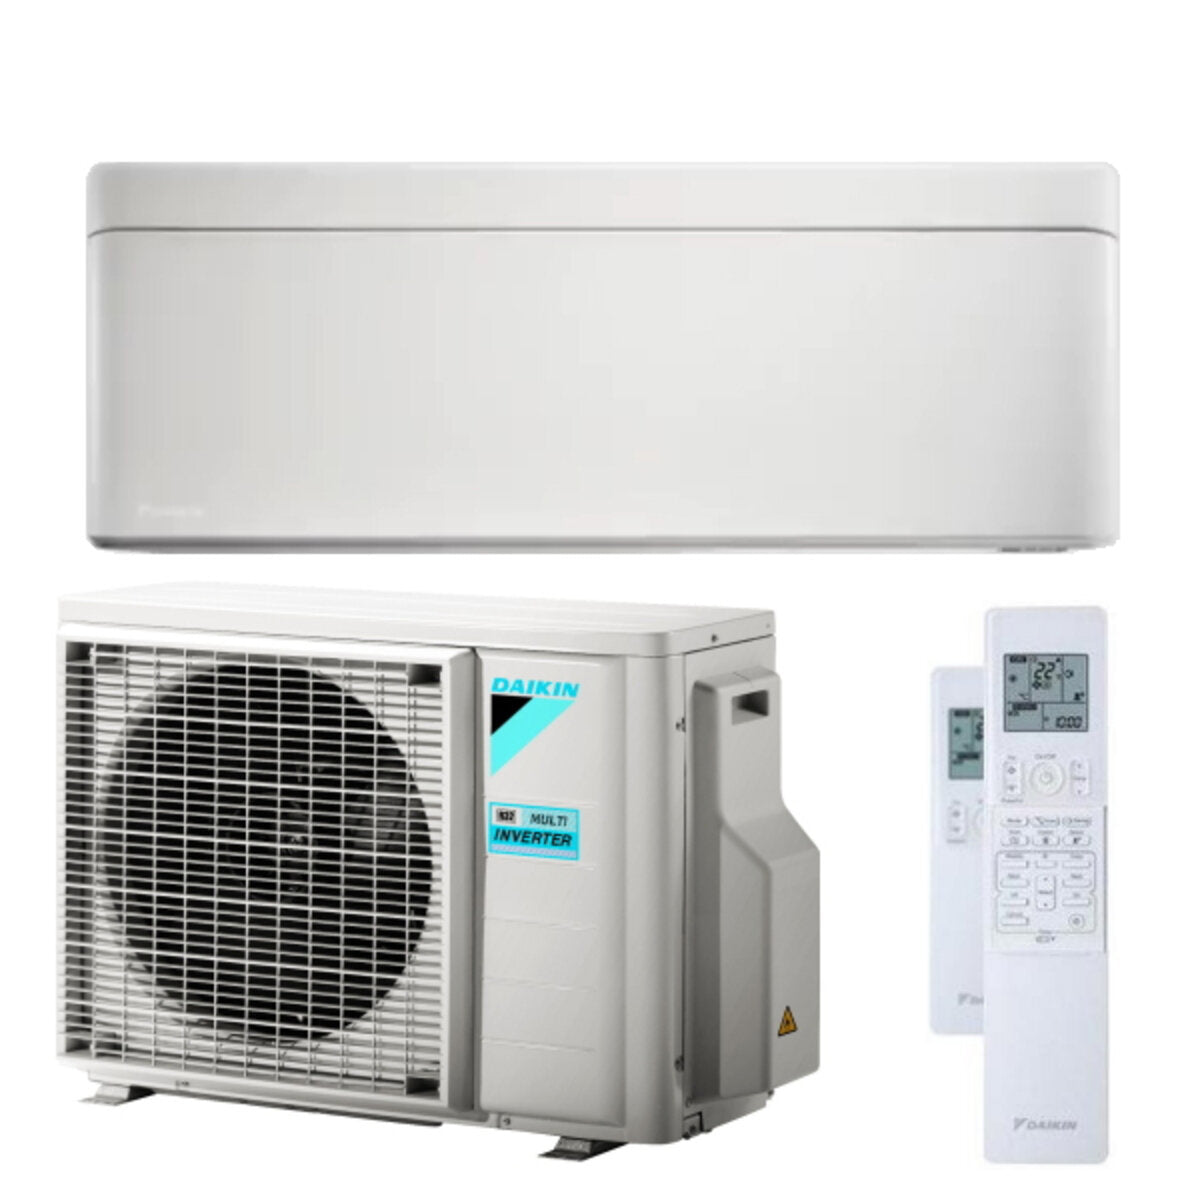 Daikin Stylish white air conditioner 7000 BTU R32 inverter A +++ wifi